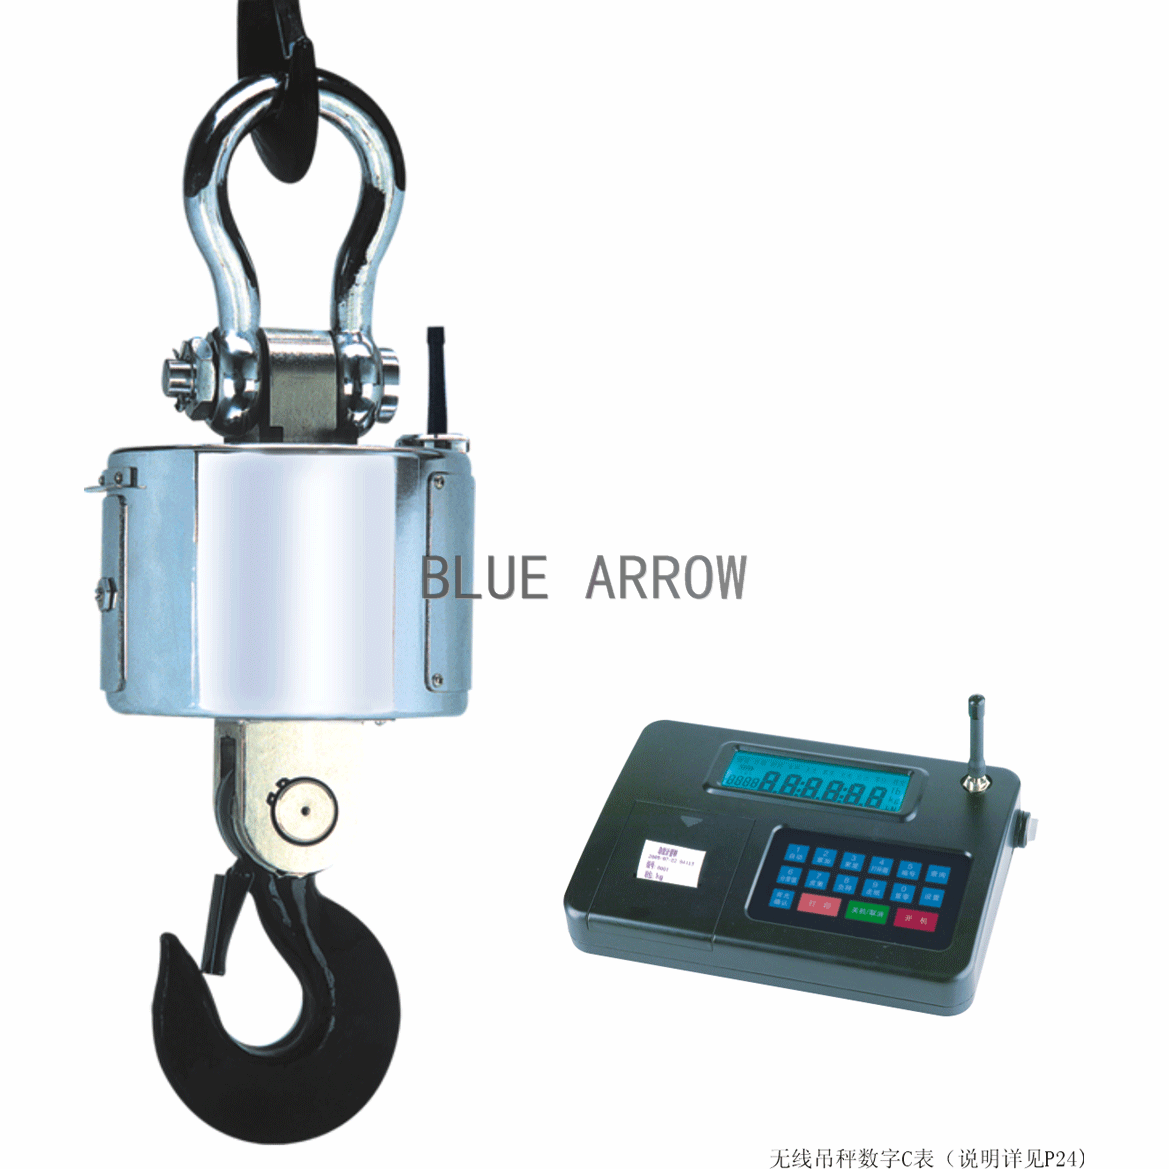 Blue Arrow Wireless Digital Crane Scales SZ-BC